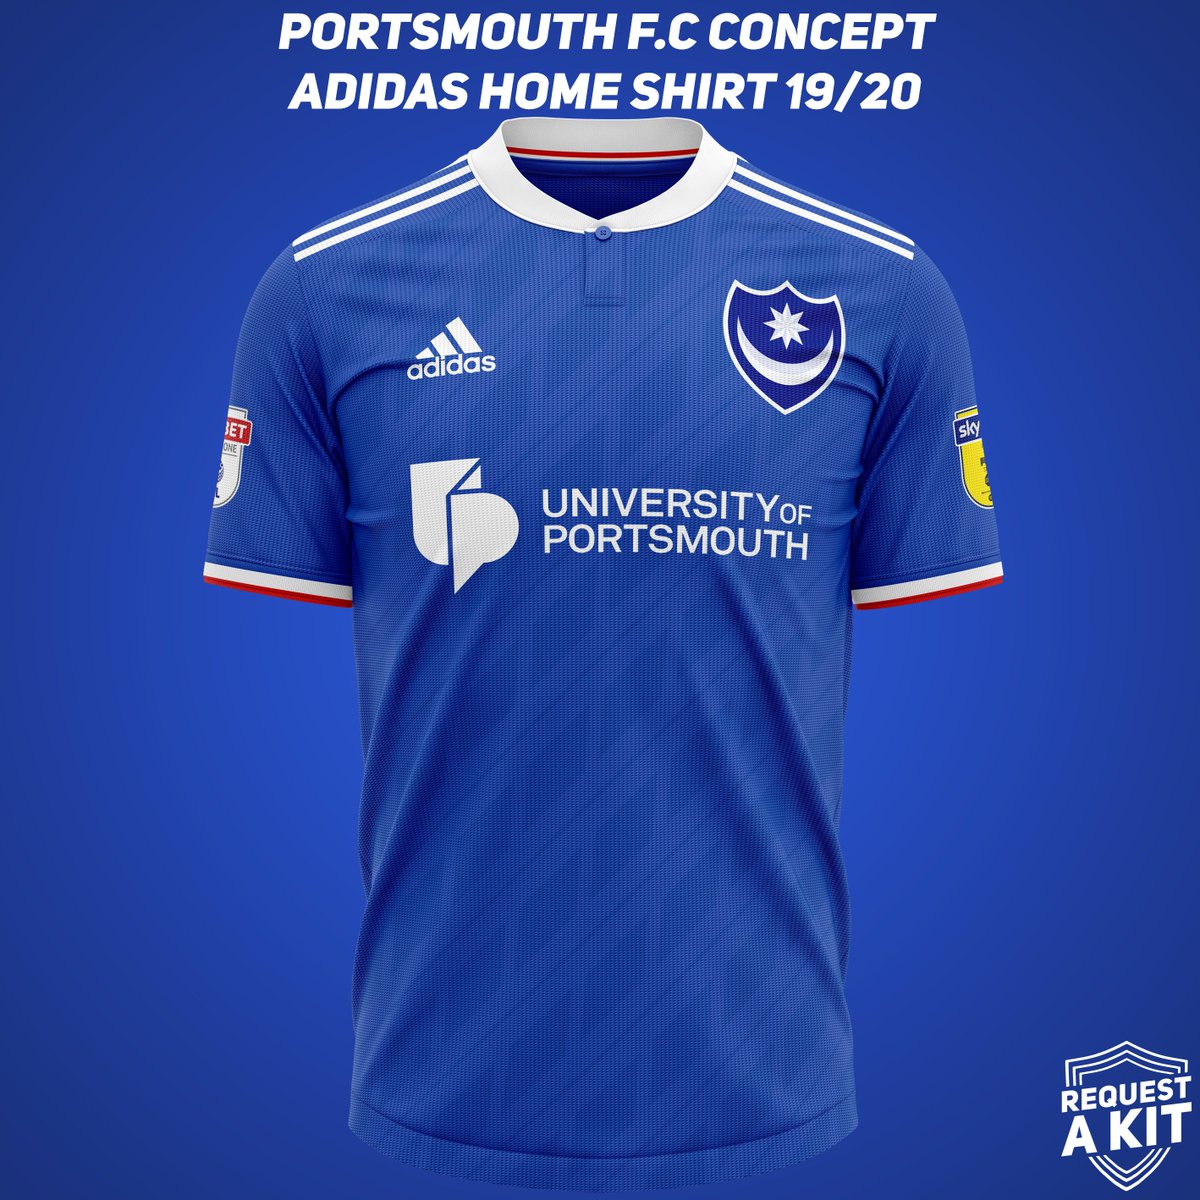 portsmouth fc jersey